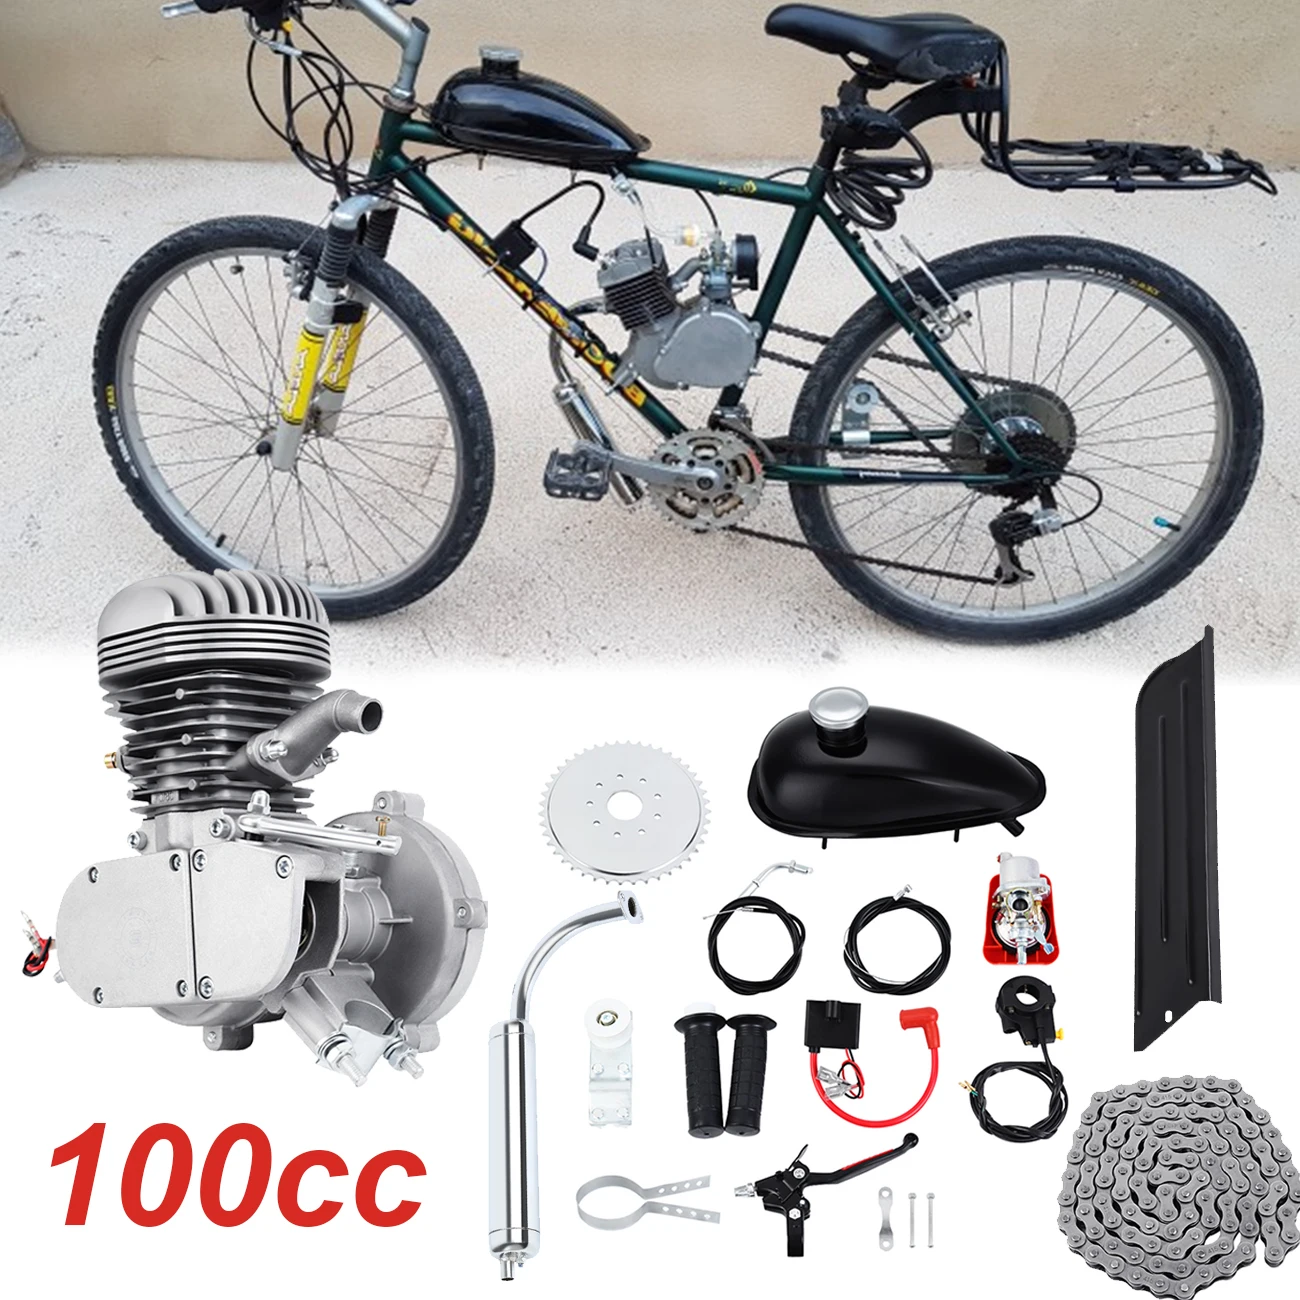 Samger 50/80/100CC Biciclete Motor pe Benzina, Kit 2 Timpi Buzunar Biciclete cu Motor Pentru BRICOLAJ Biciclete Electrice Motor de la RU/UE cumpara online > alte ~ Usite.ro